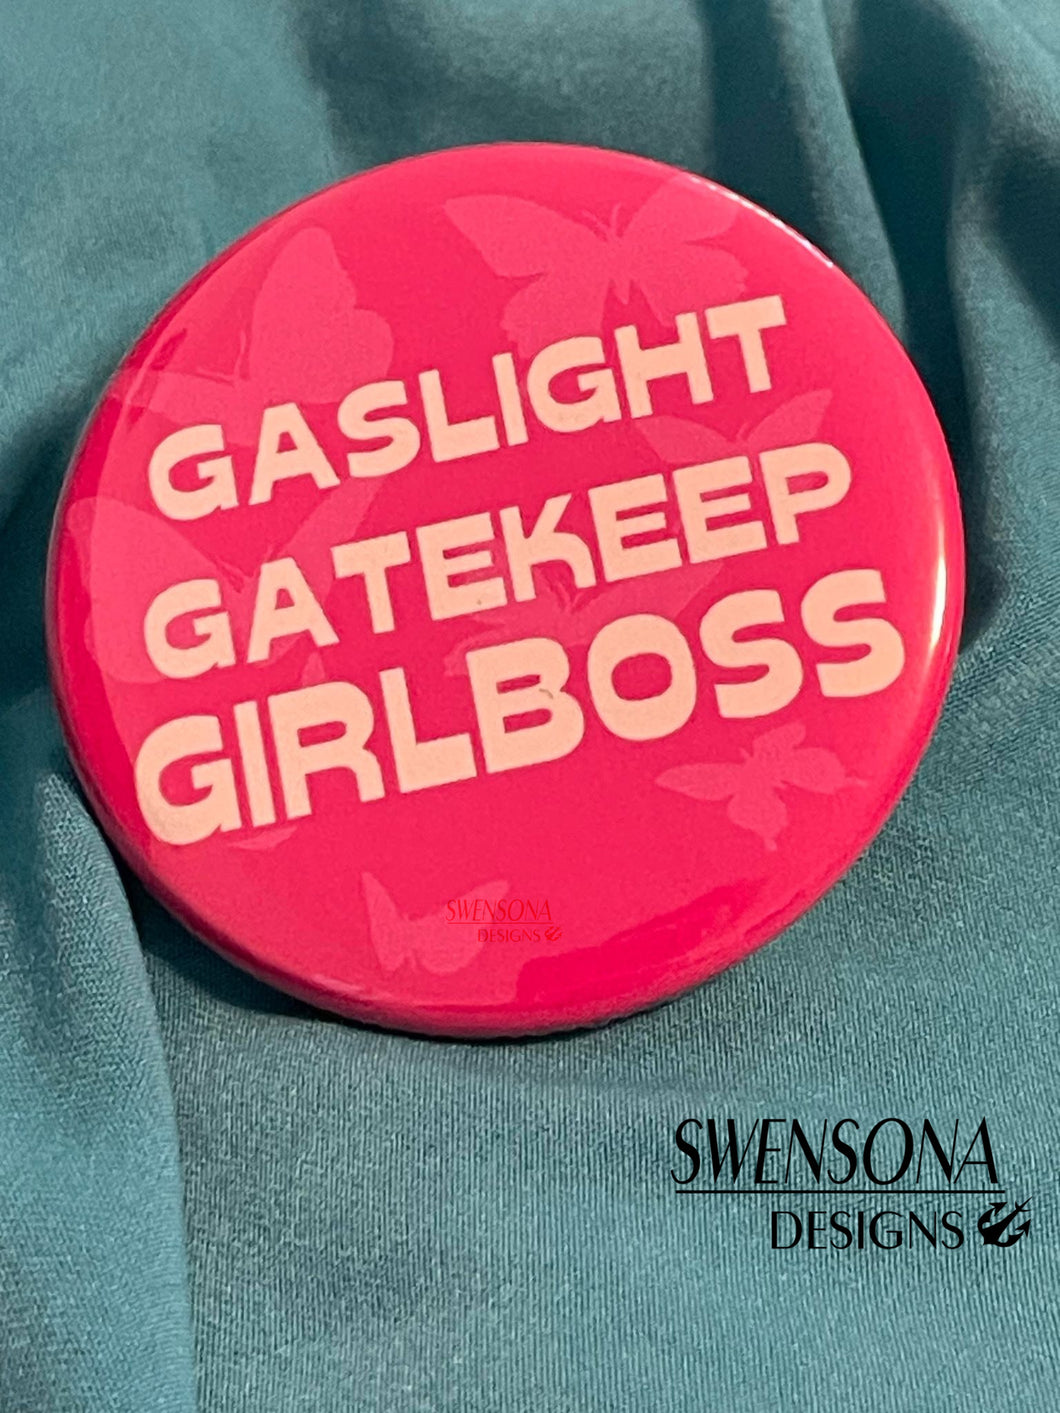 Gaslight Gatekeep Girlboss Button Boss